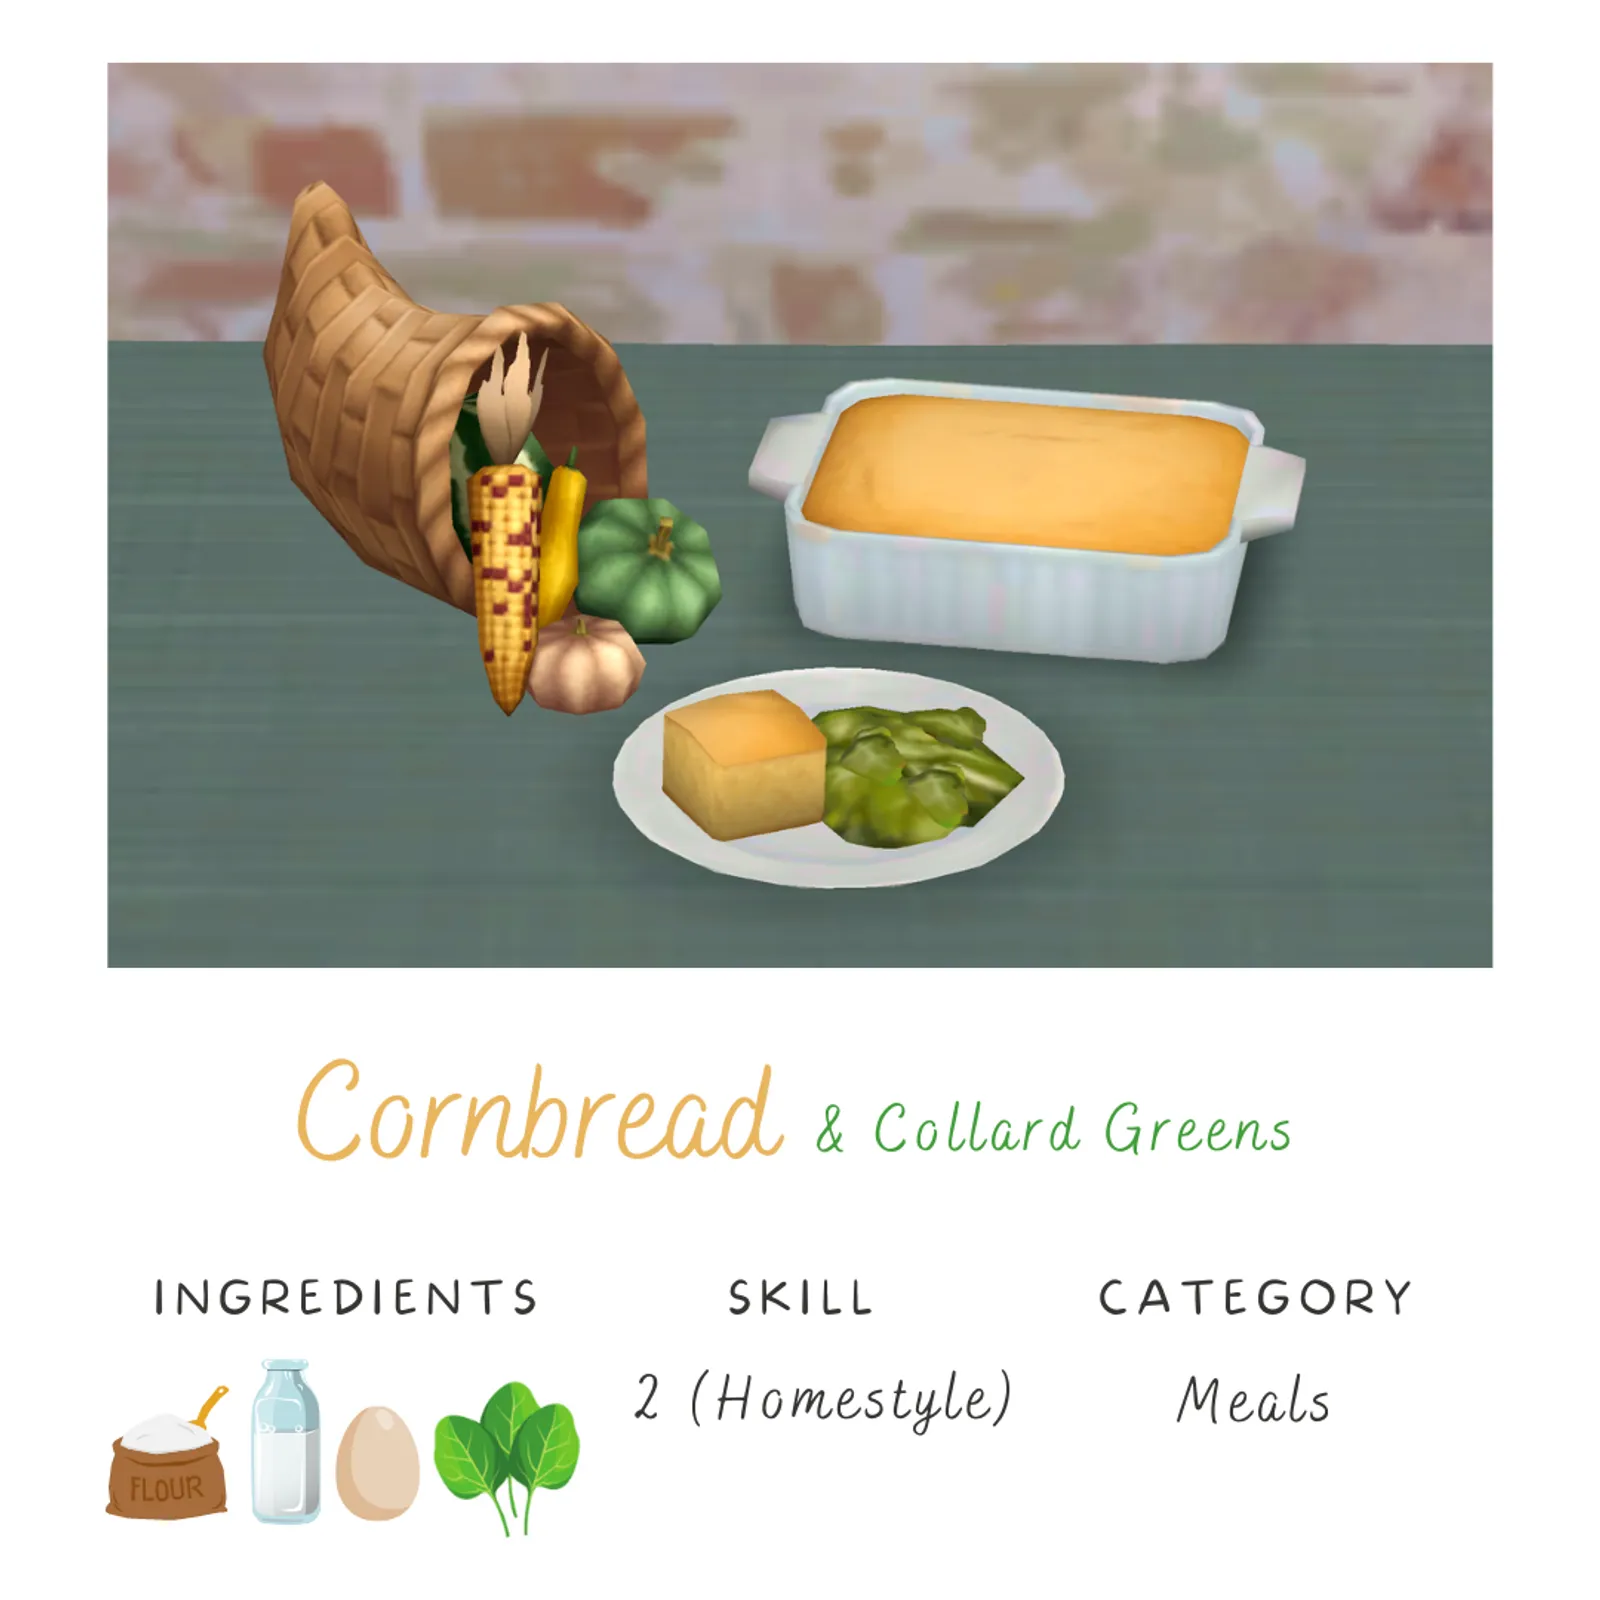 Cornbread (& collard greens)